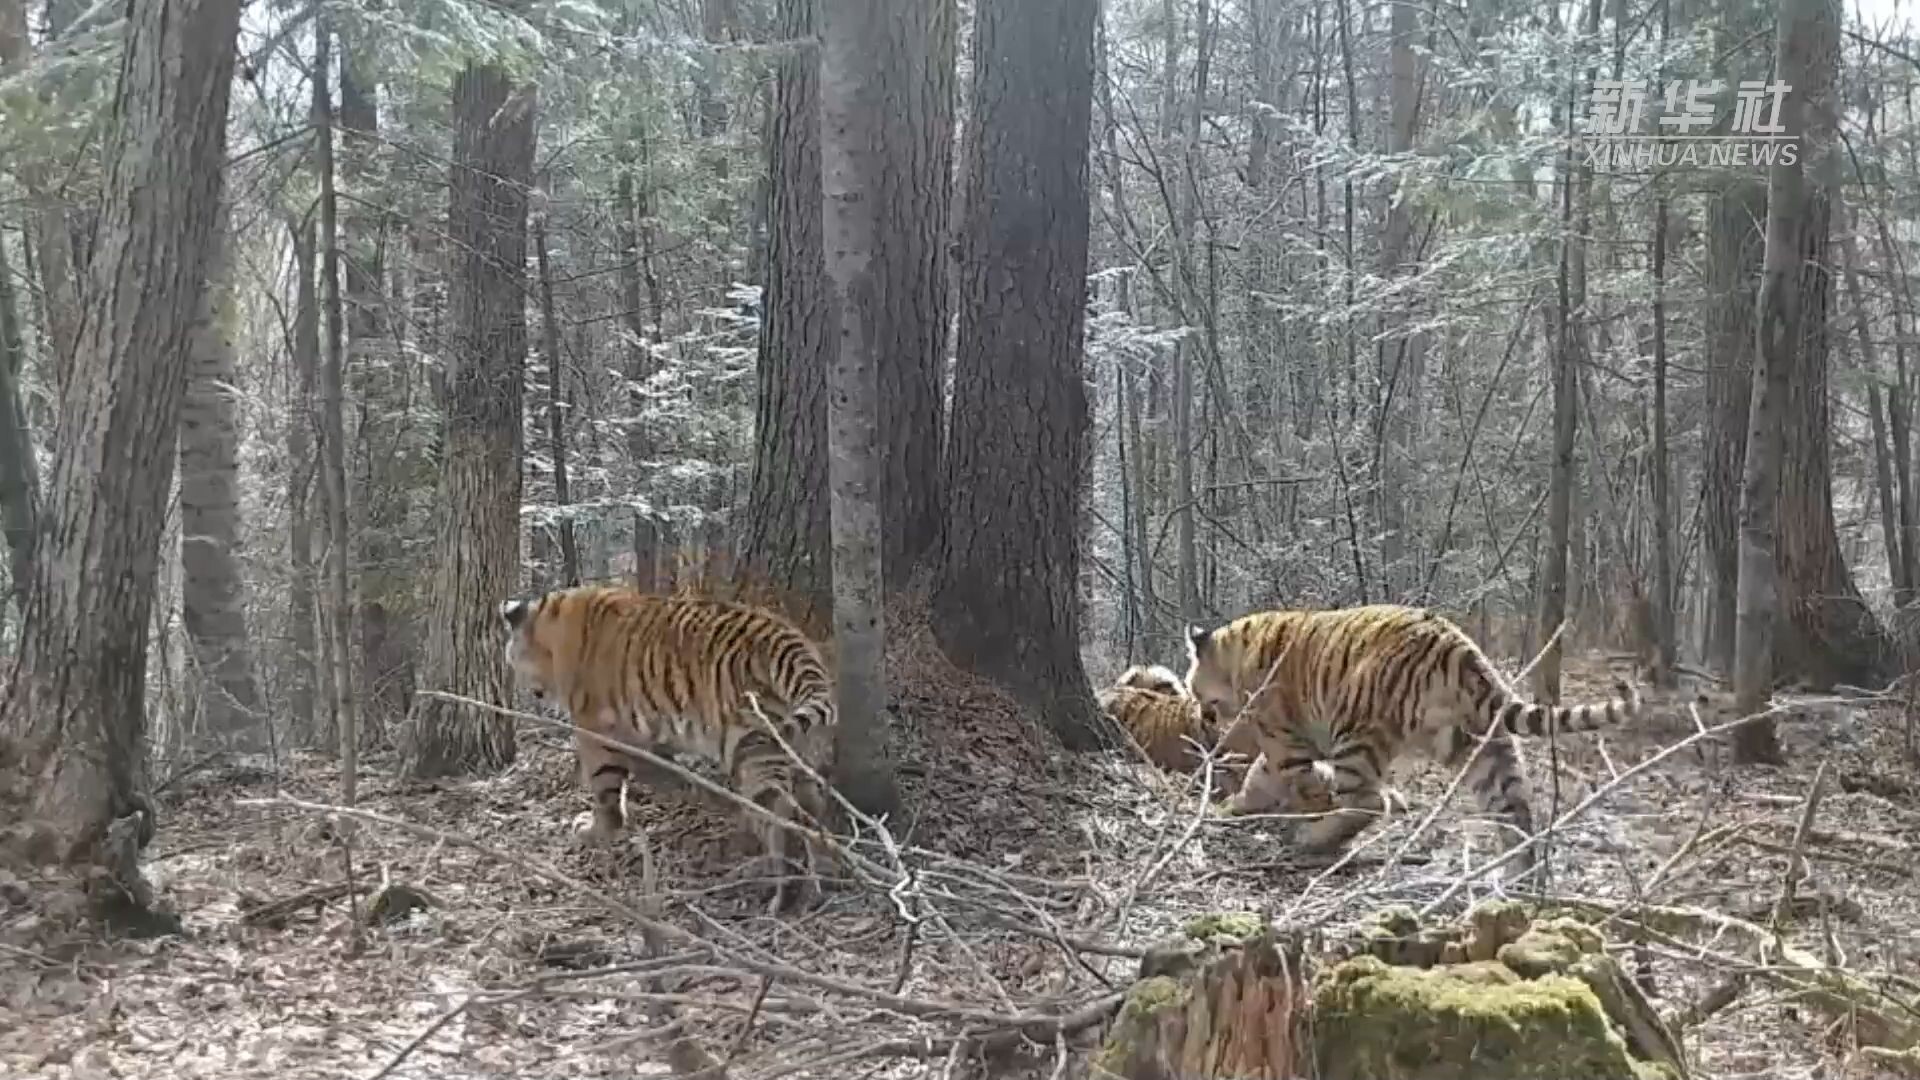 จี๋หลินจับภาพครอบครัว 'เสือโคร่งไซบีเรีย' เดินเตร่กลางป่าได้ครั้งแรก